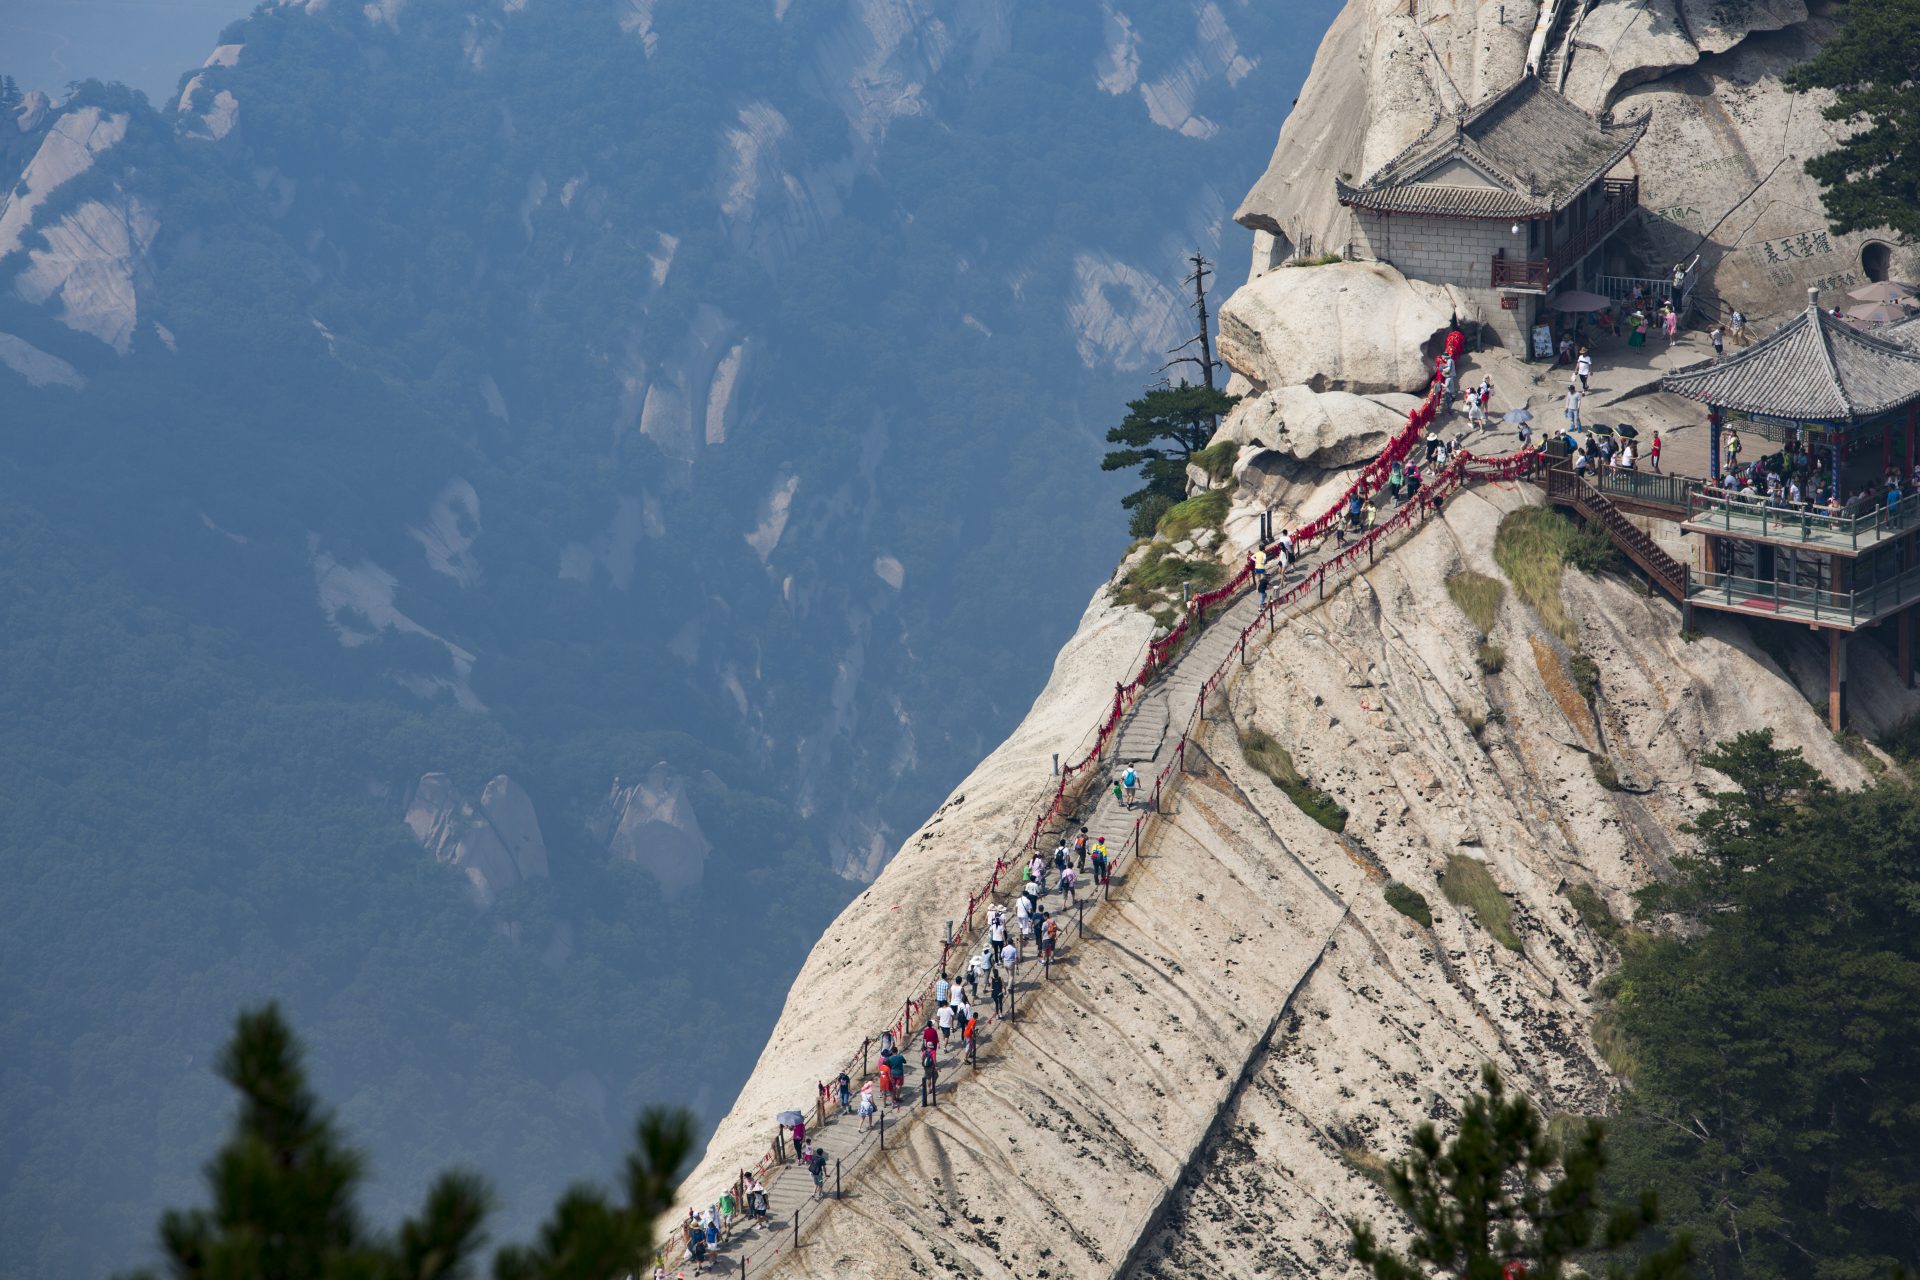 Le scale più affascinanti (e a volte più pericolose) al mondo